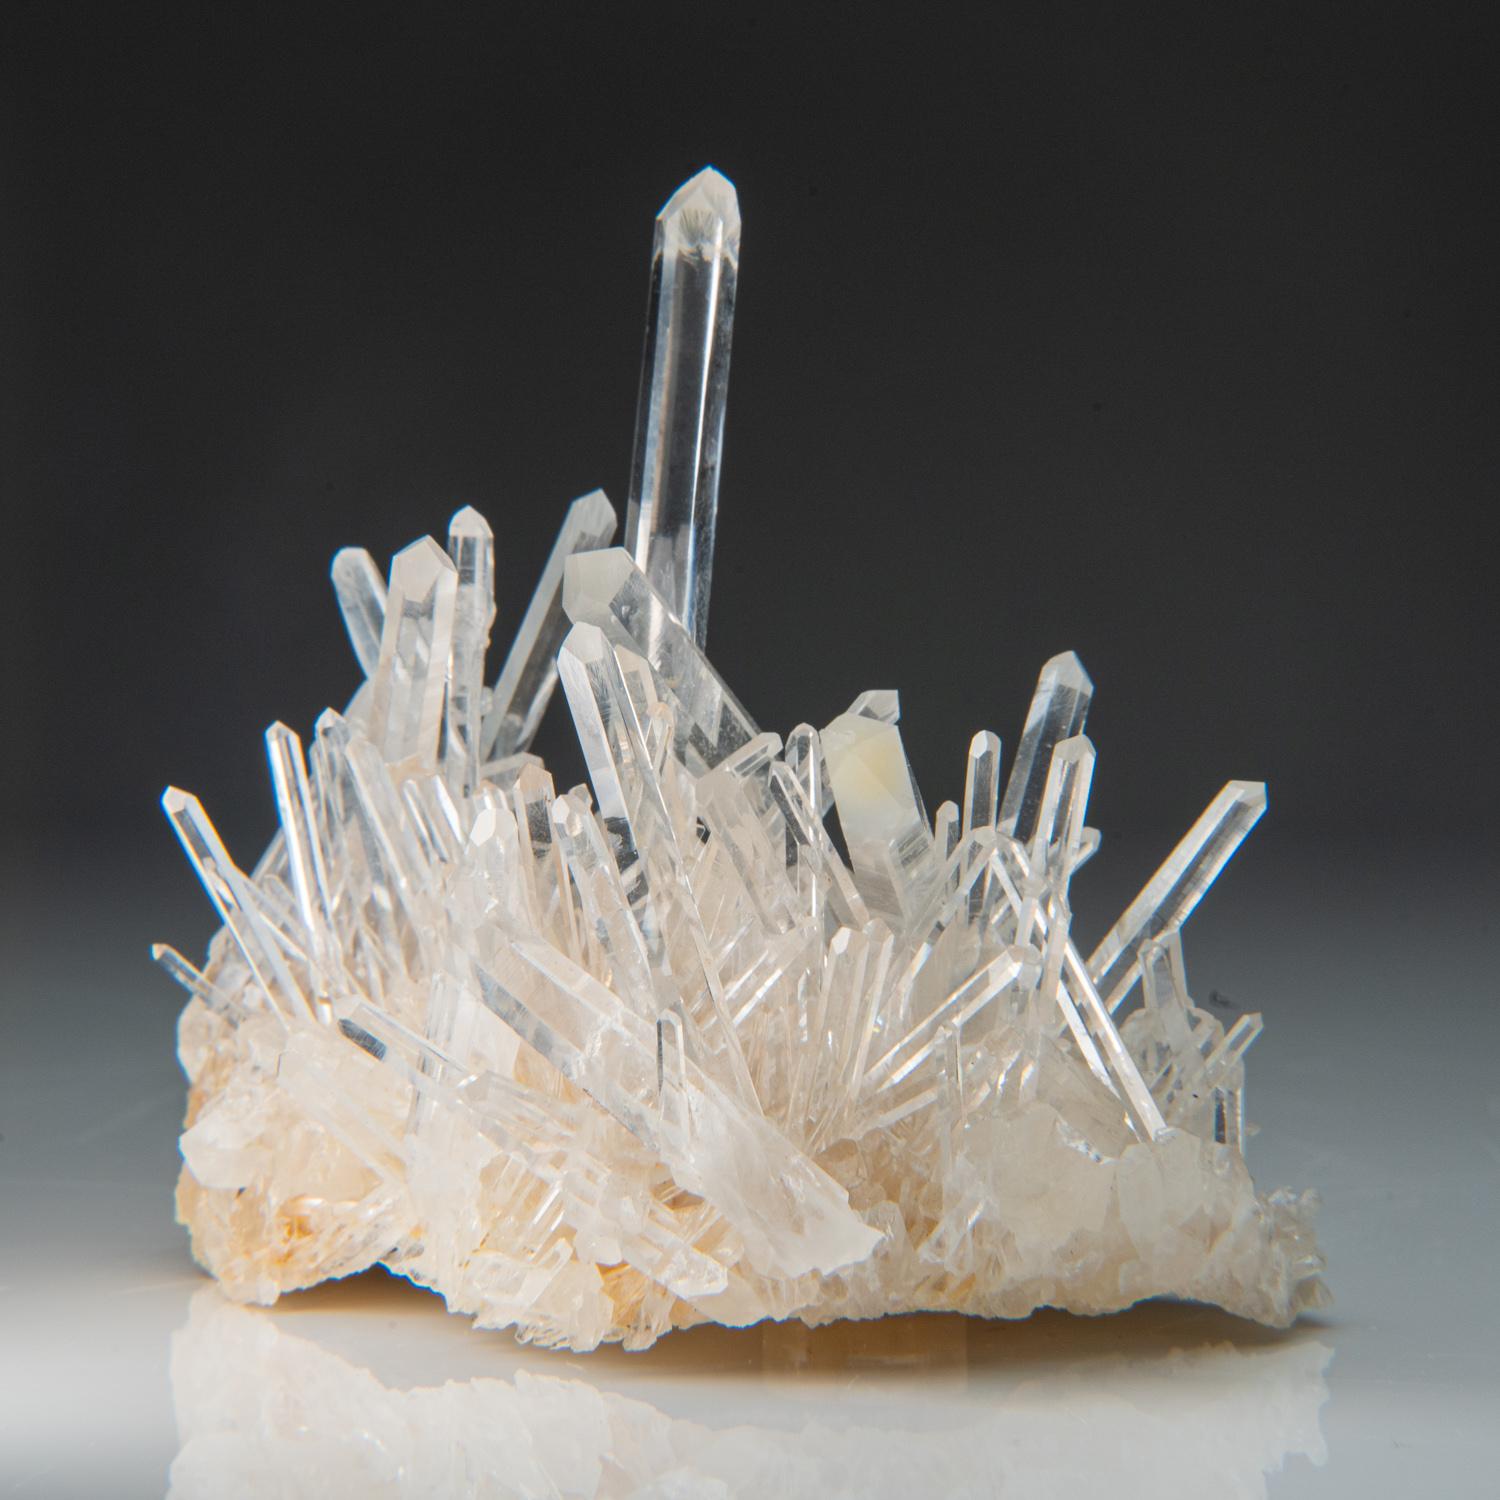 Depuis Alto de Cruces, Suaita, Santander, Colombie

Authentique amas de nombreux cristaux de quartz incolores transparents et lustrés se croisant. Les cristaux de quartz sont exceptionnellement propres à l'intérieur. La grappe de quartz tient bien